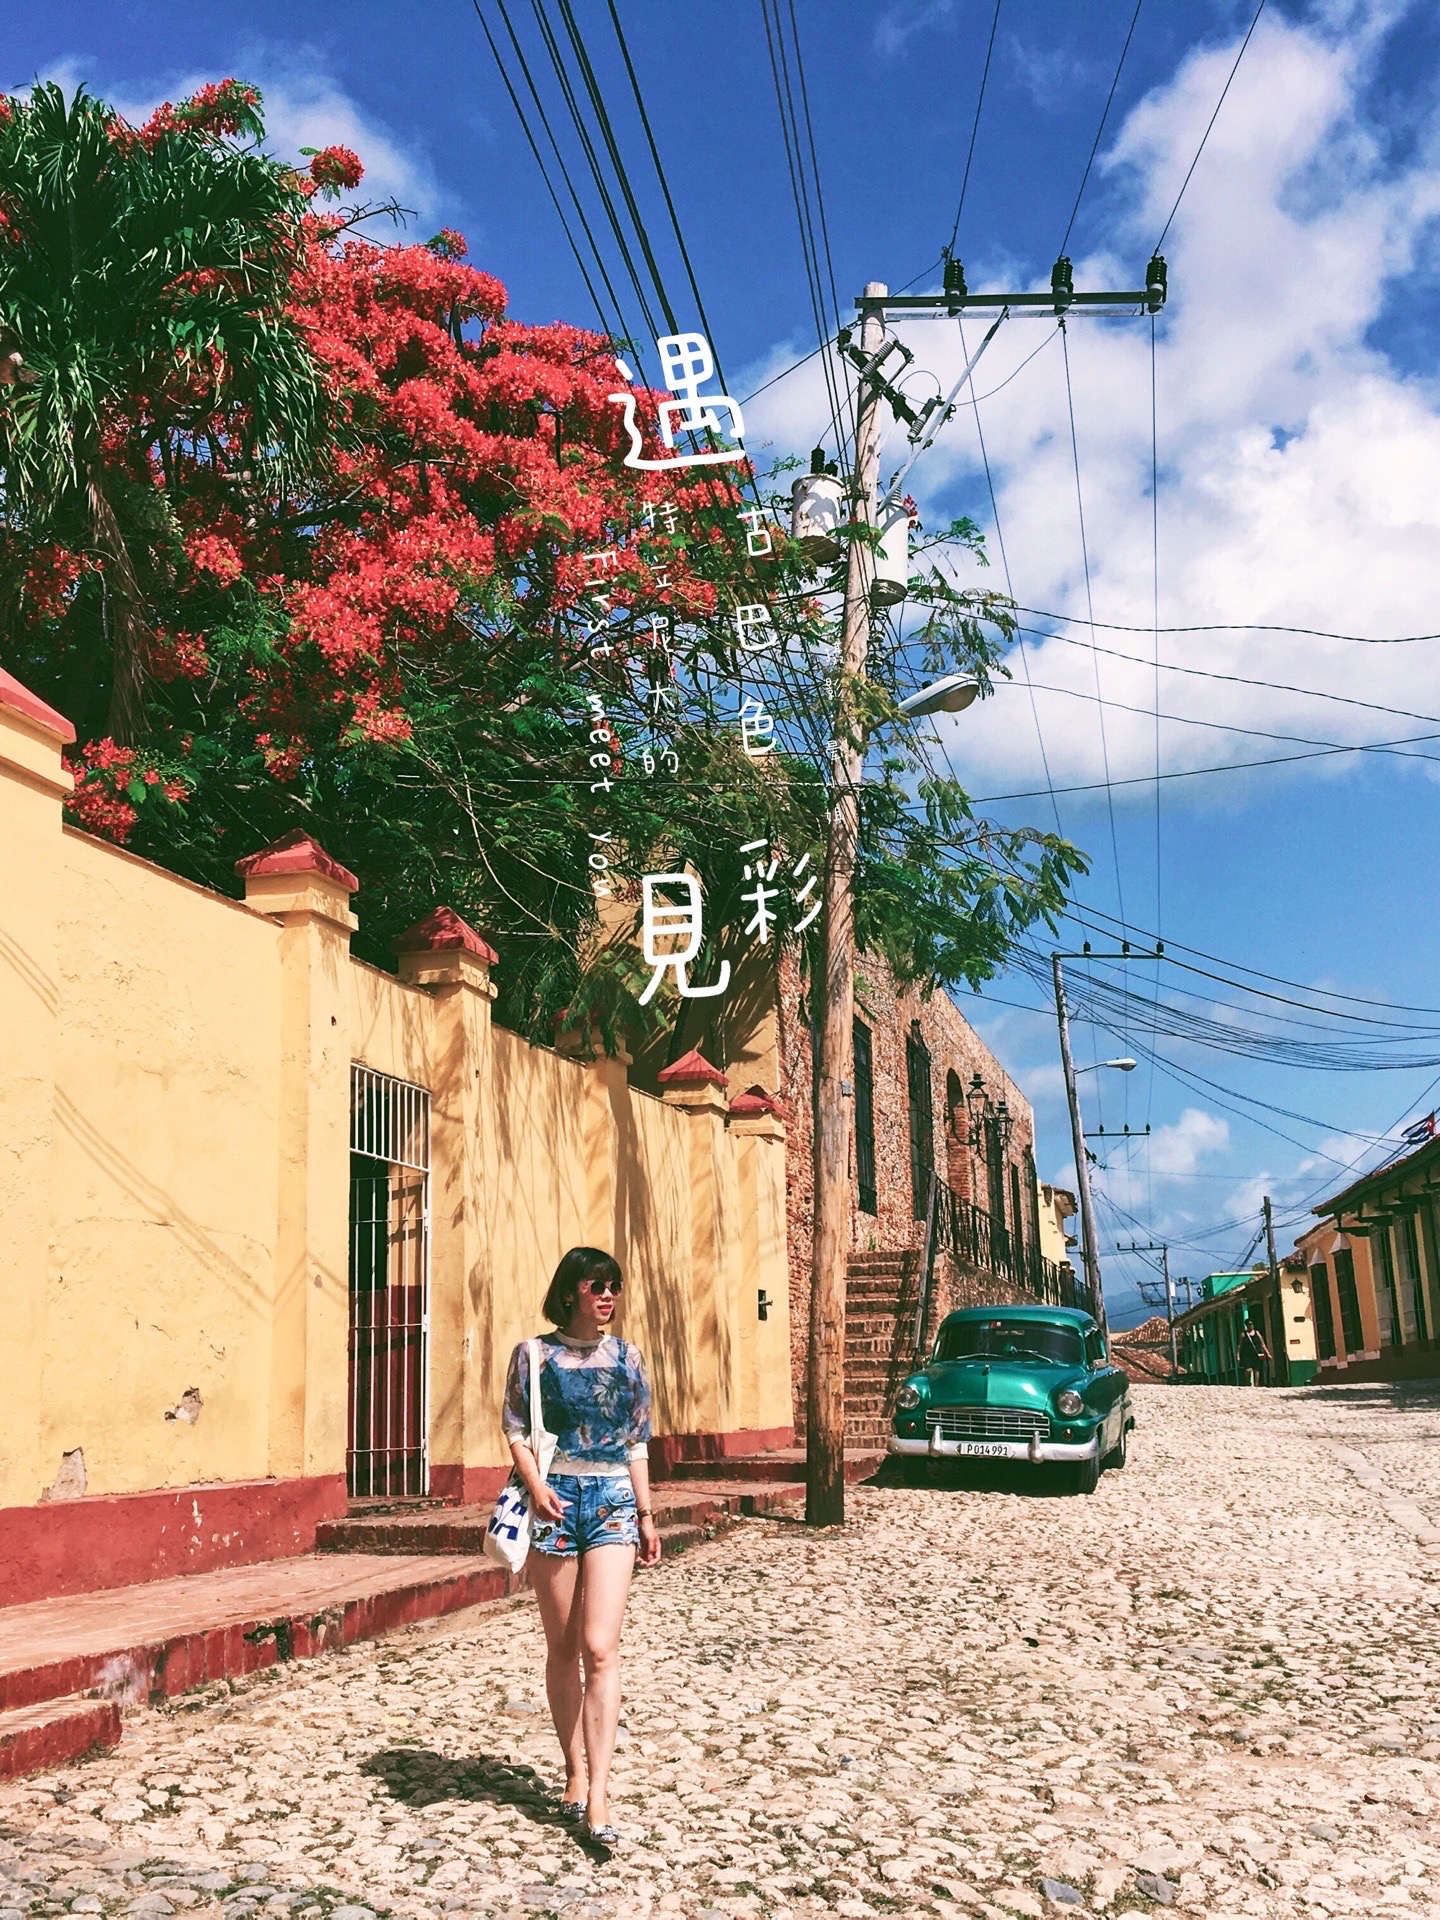 特立尼达古城的古巴色彩丨古巴奇遇记  古巴行第二站——老城特立尼达  ⚡️奇遇1⃣️：油画艺人  在